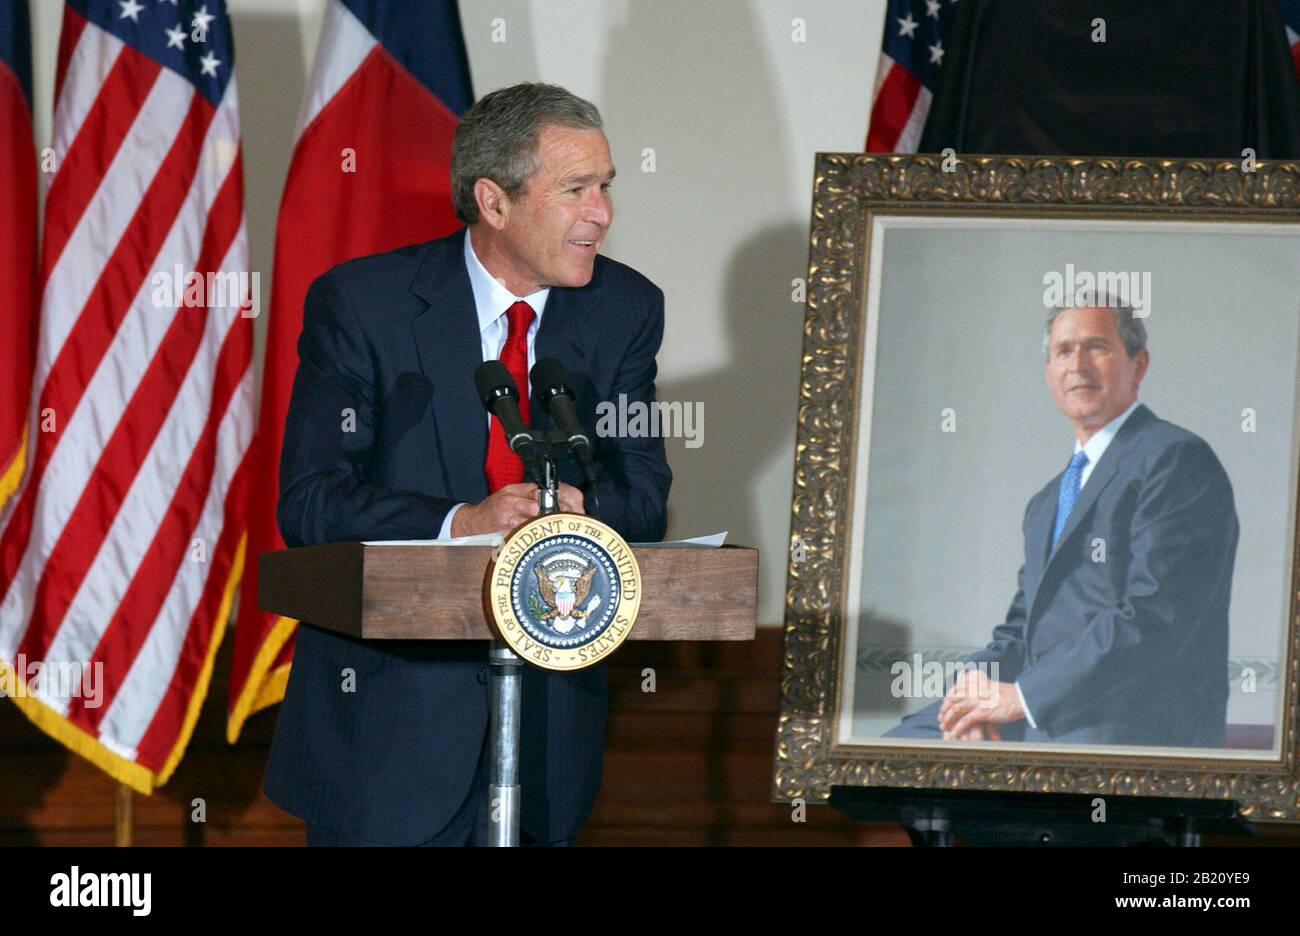 4 de enero de 2002, Austin, Texas: El Presidente de los Estados Unidos George Bush regresa al Capitolio de Texas el viernes para la presentación de su retrato oficial durante su gobernación de Texas de 1995 a 2000. El retrato, del artista Scott Gentling, fue encargado el año pasado y se colgará en la rotonda del Capitolio de Texas. ©Bob Daemmrich Foto de stock